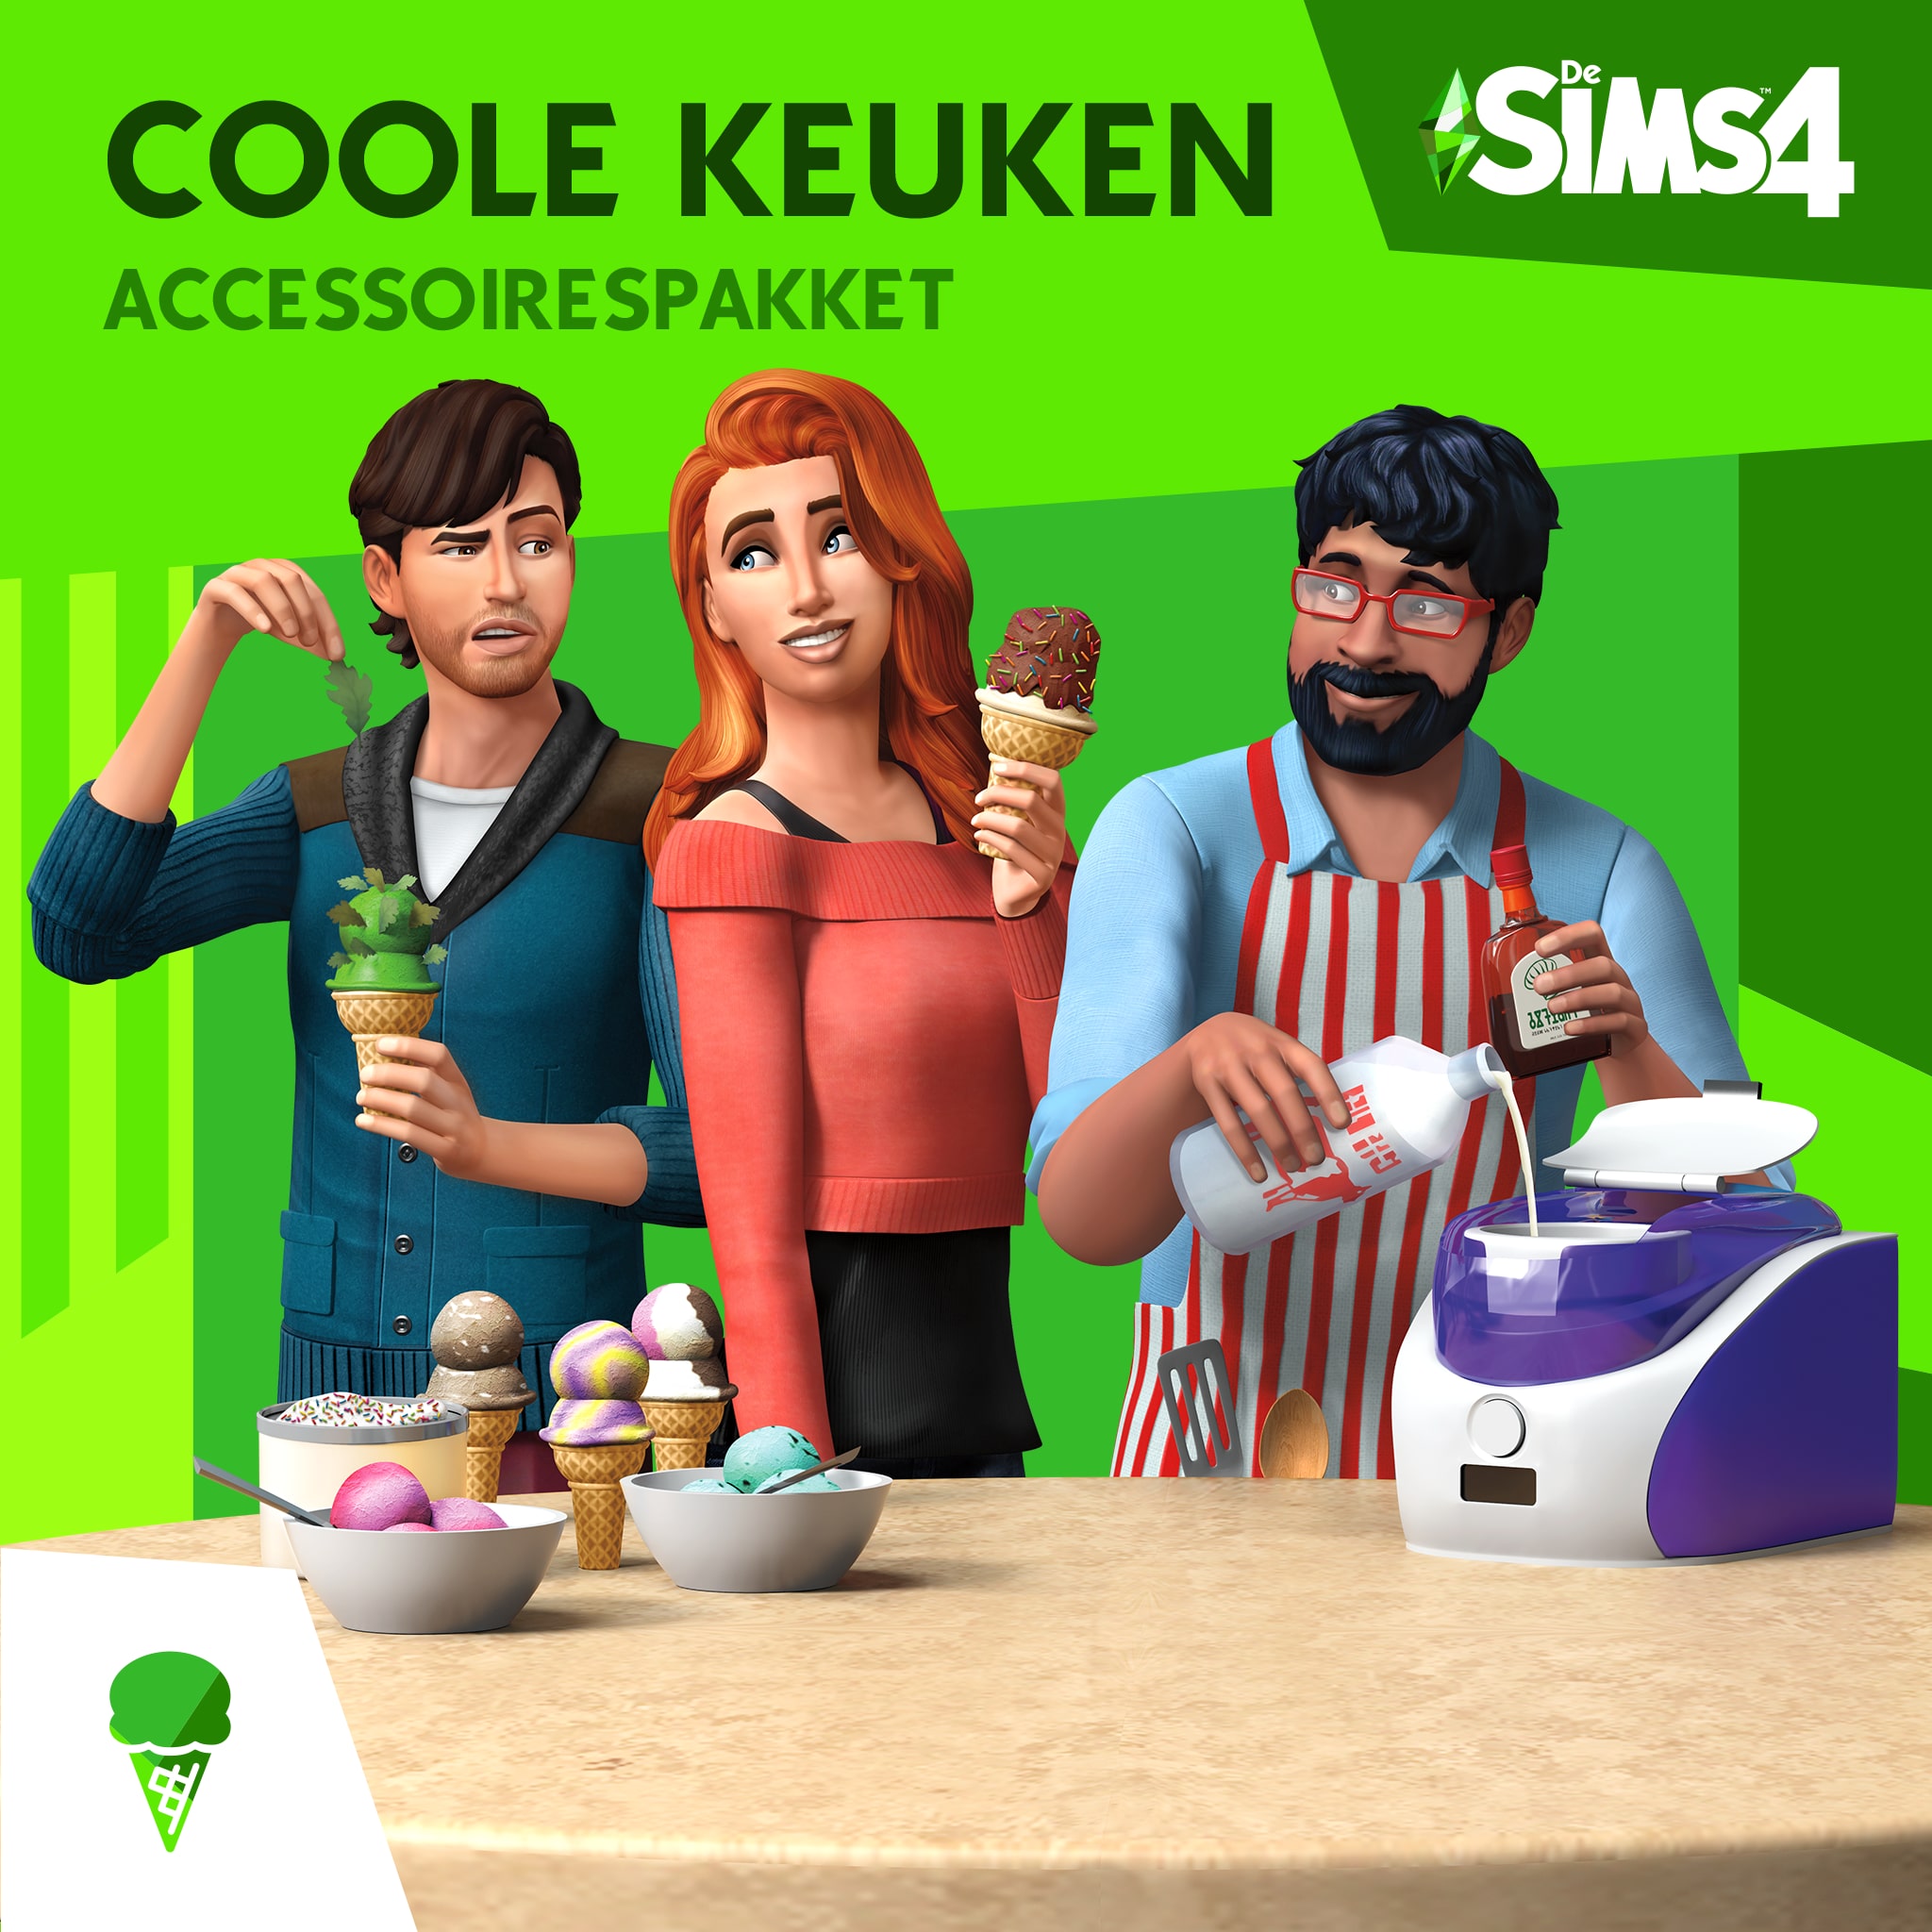 De Sims™ 4 Coole Keukenaccessoires